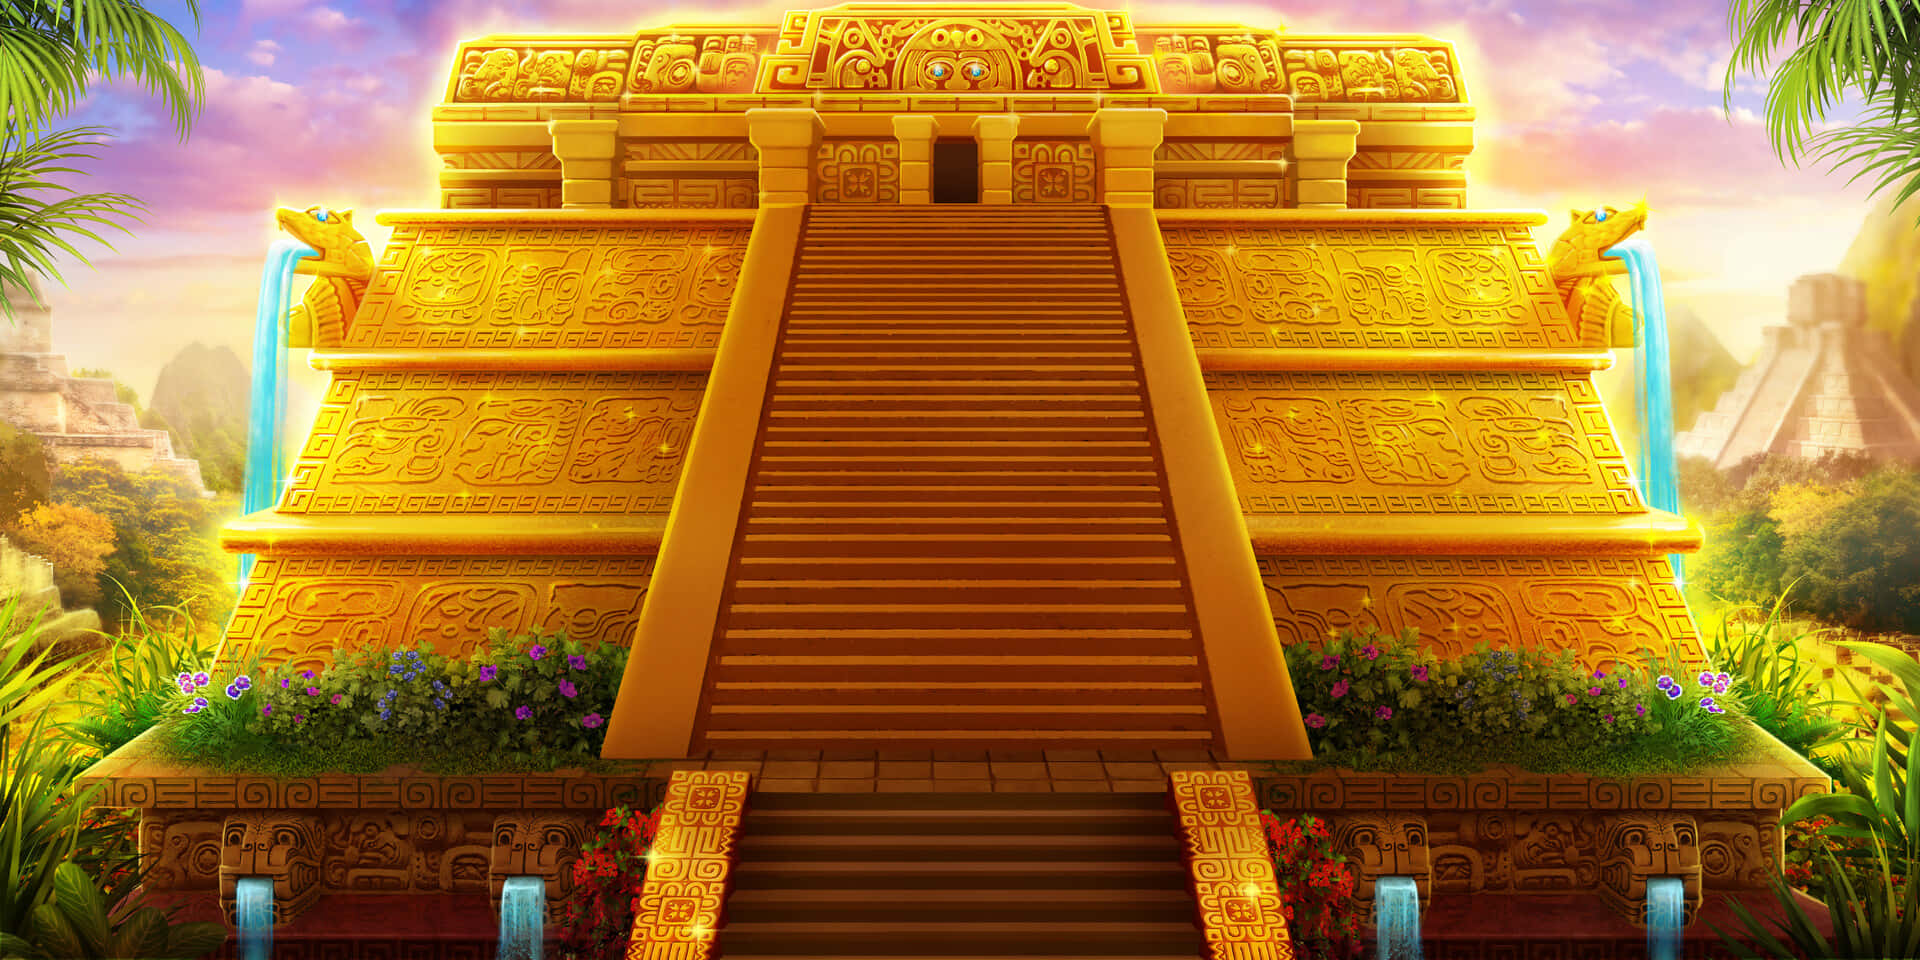 Einwunderschöner Sonnenaufgang Strahlt Von Der Steilen Fassade Eines Prächtigen Tempels Aus.